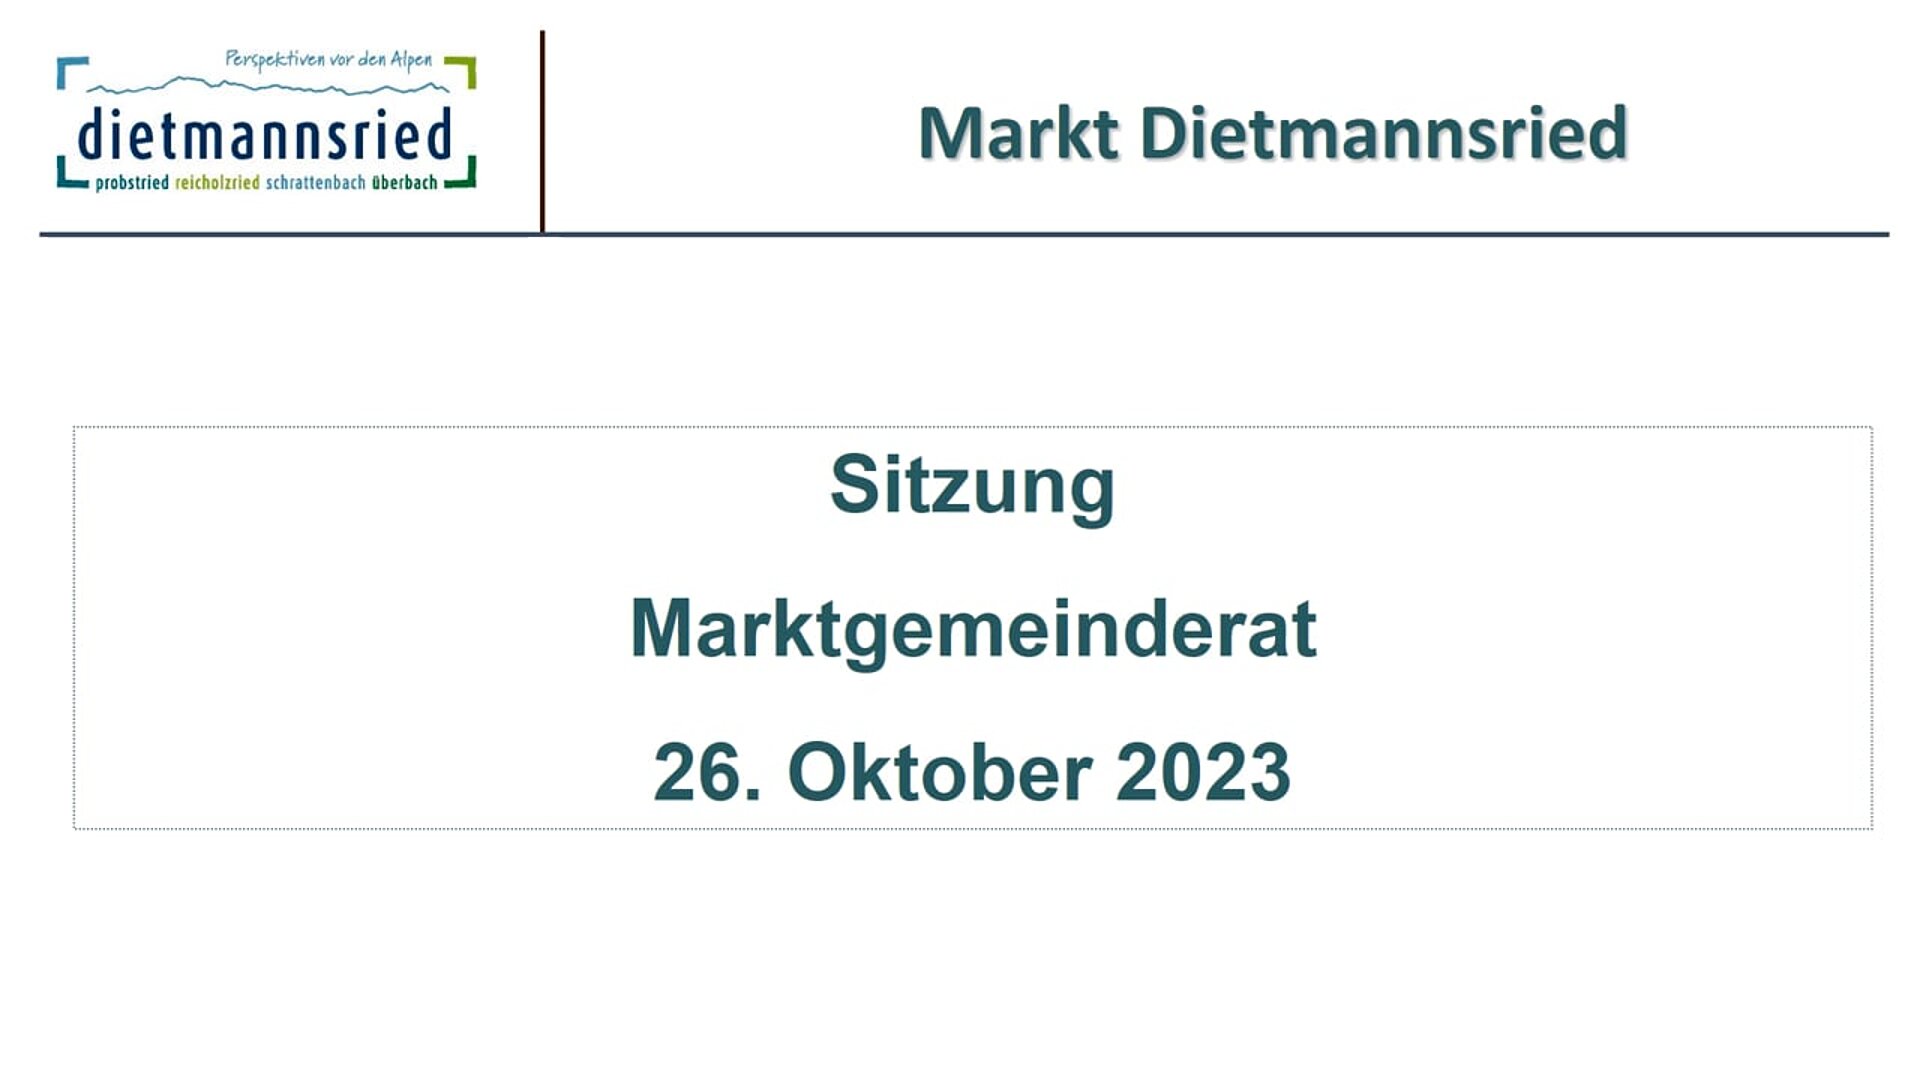 Sitzung Marktgemeinderat vom 26. Oktober 2023